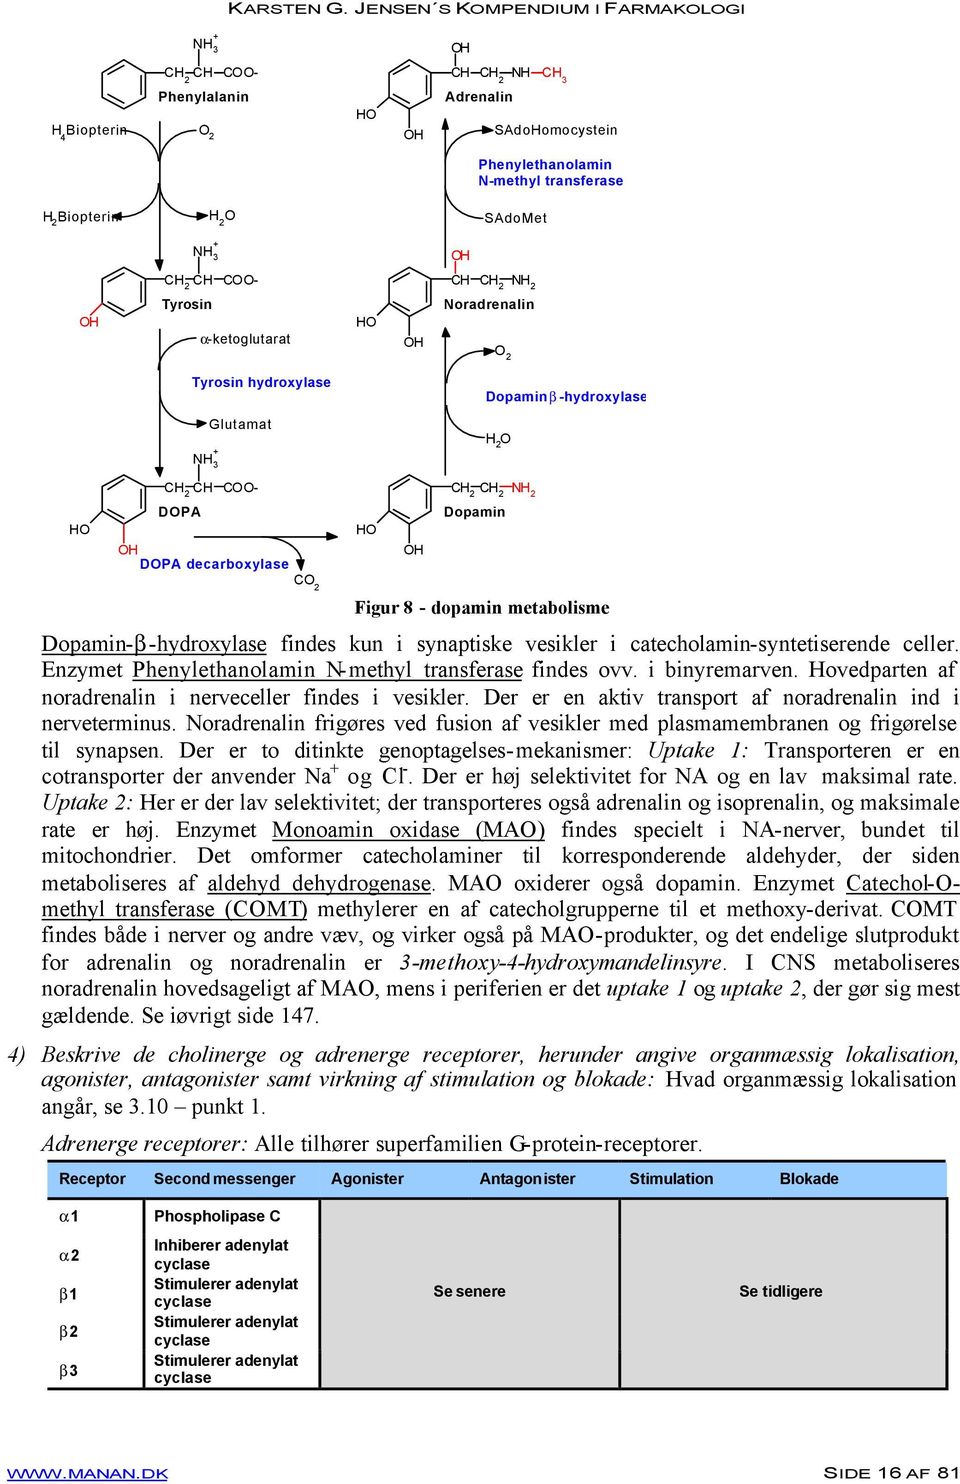 Figur 8 - dopamin metabolisme Dopamin-β-hydroxylase findes kun i synaptiske vesikler i catecholamin-syntetiserende celler. Enzymet Phenylethanolamin N-methyl transferase findes ovv. i binyremarven.